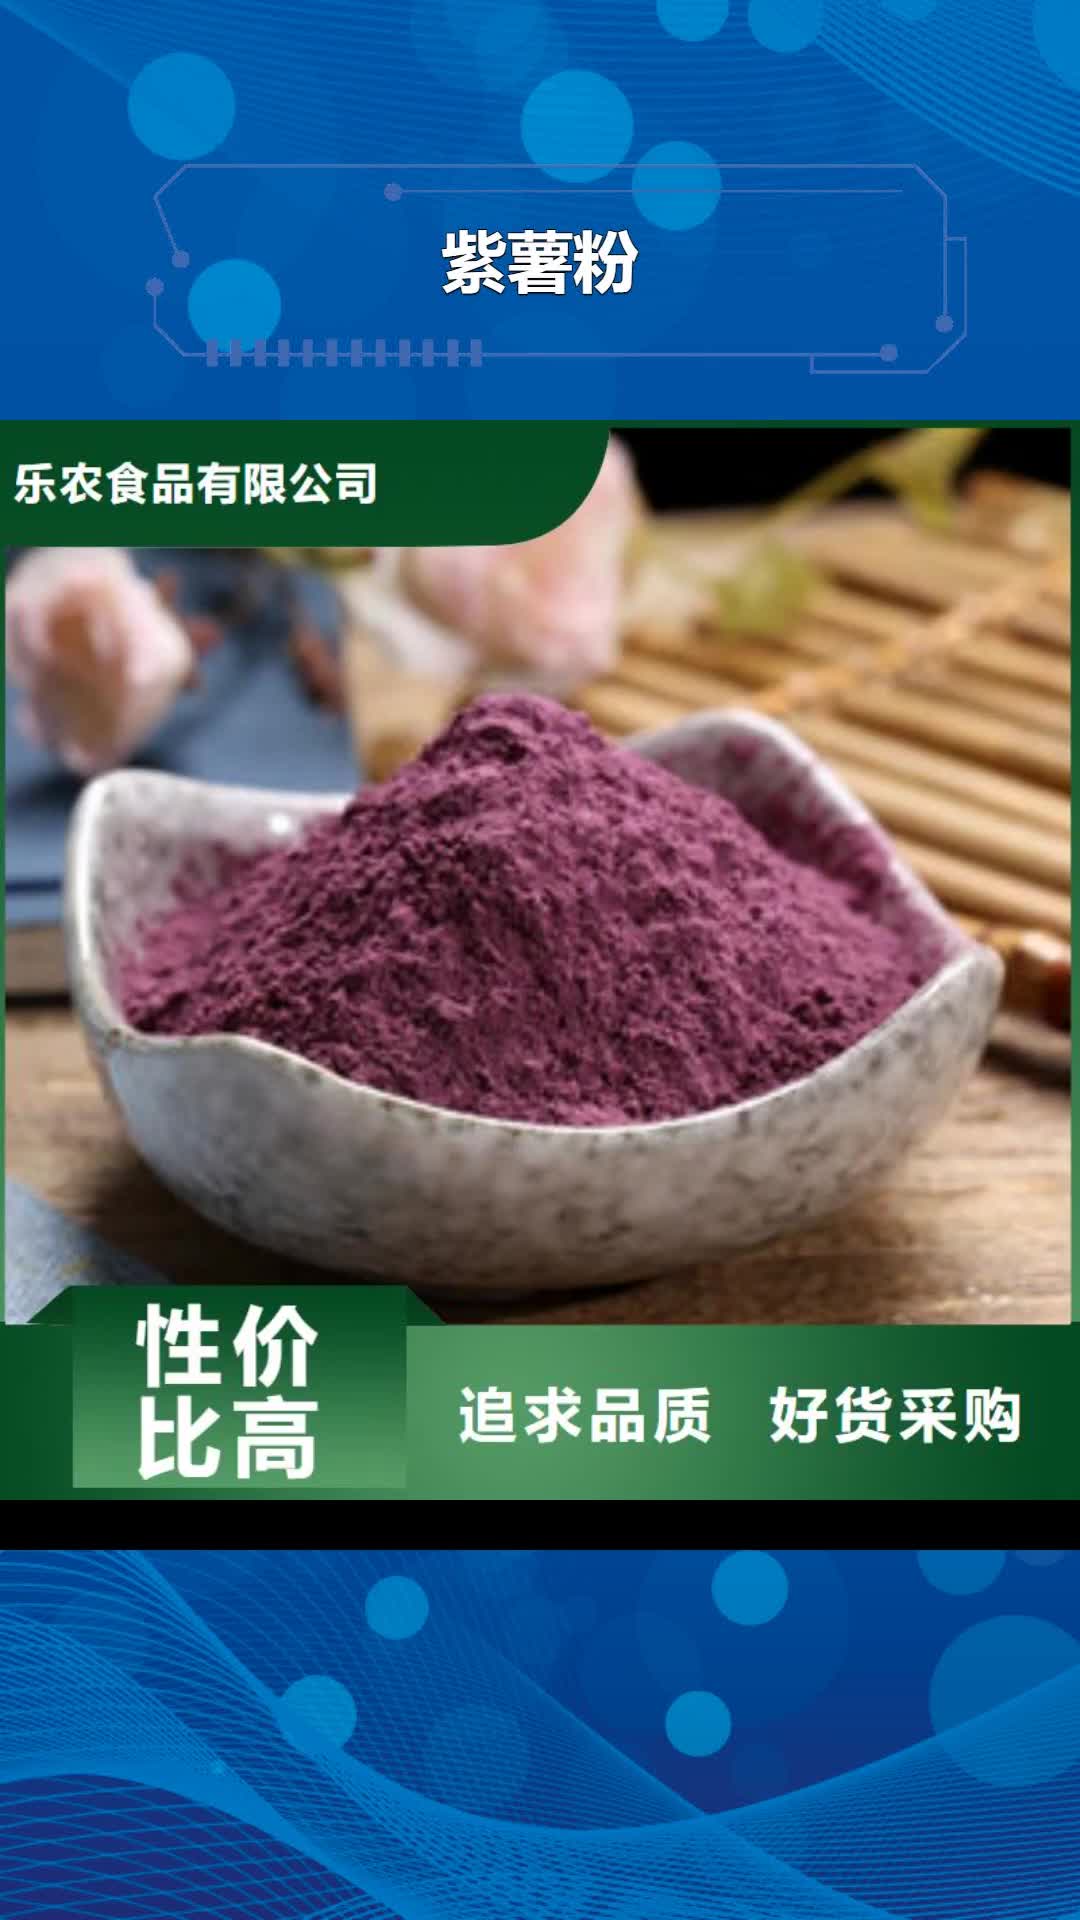 日喀则紫薯粉精心打造